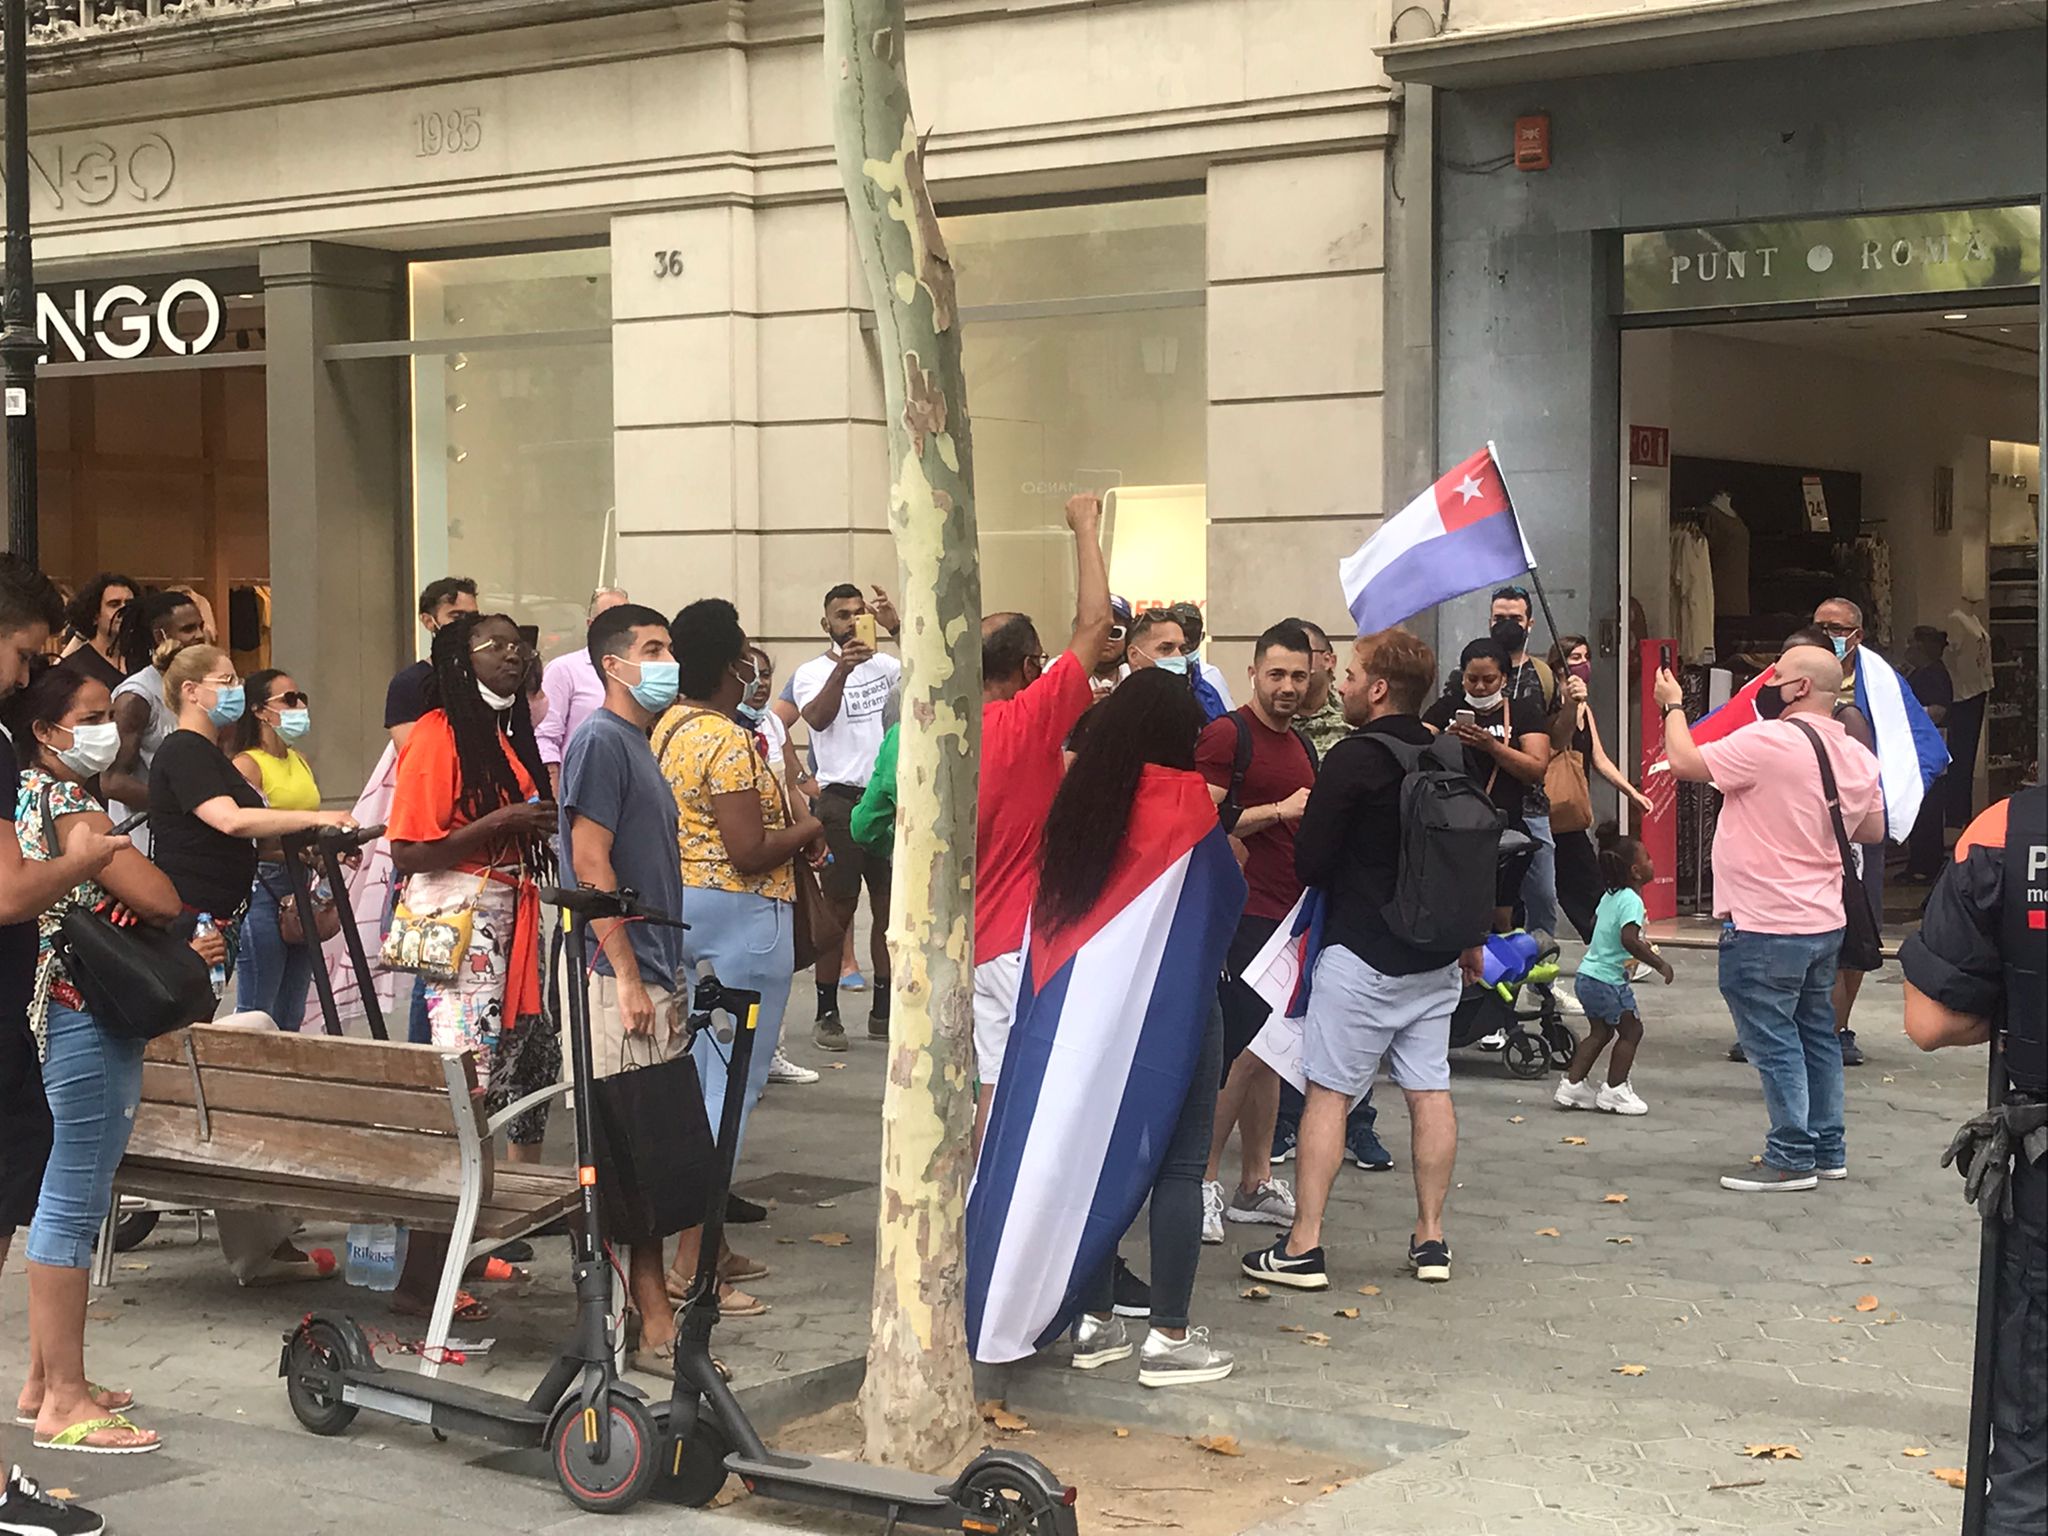 La división y crispación por Cuba llega a Barcelona